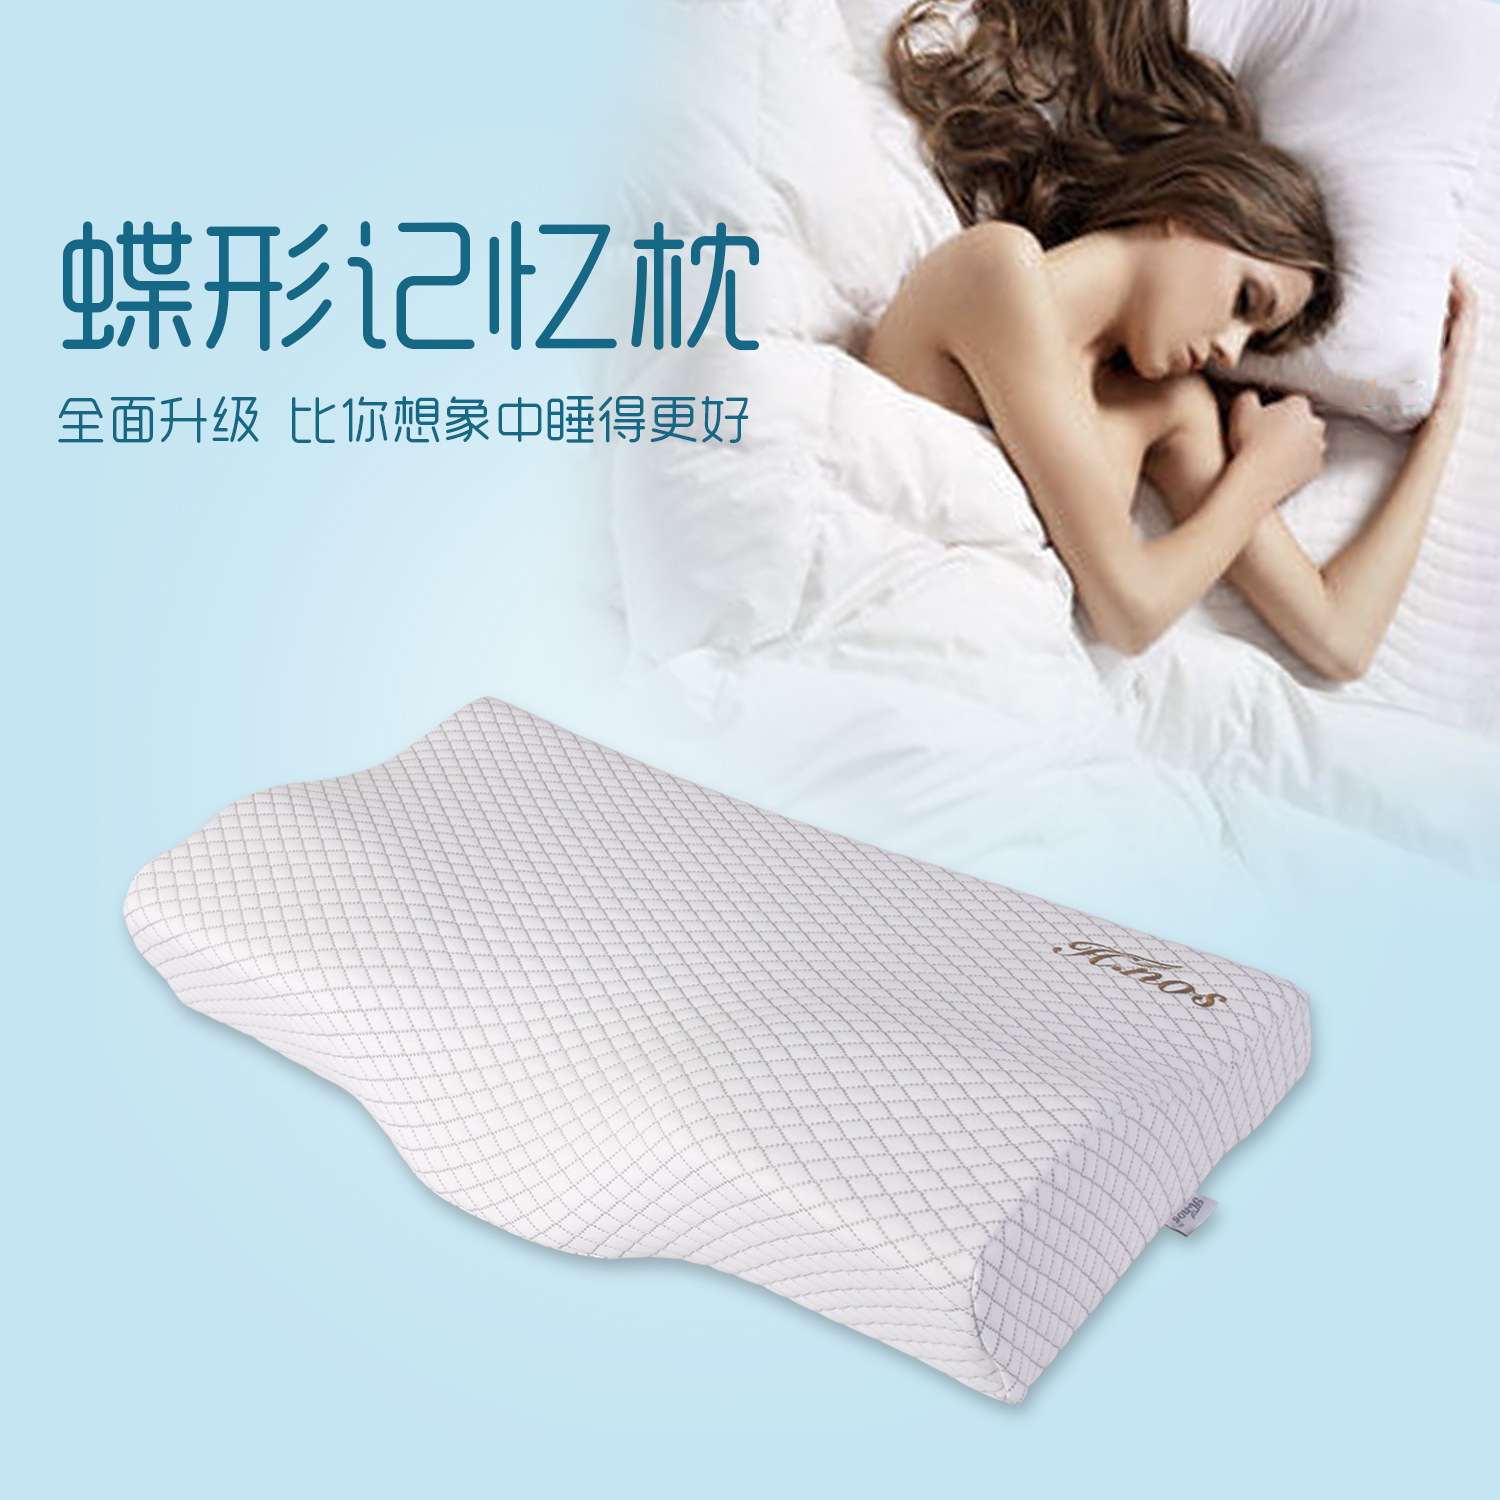 新一代蝶形记忆枕 记忆棉睡眠枕头颈椎枕记忆枕直接直销可贴牌